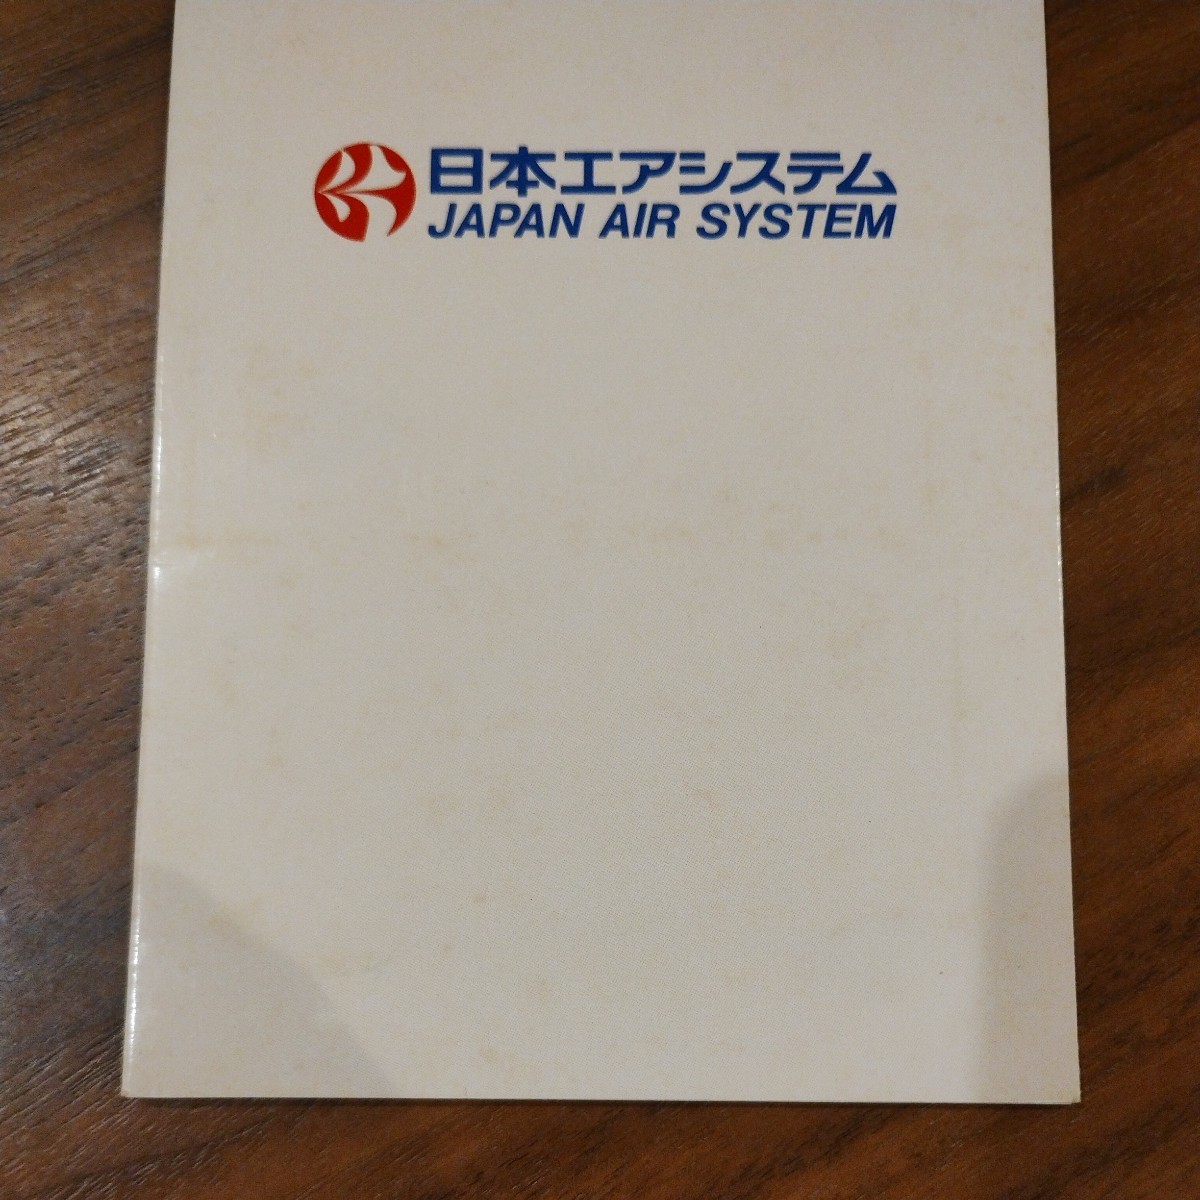  очень редкий! JAS Japan Air System новый название компании память оригинал телефонная карточка 3 шт. комплект не использовался товар оригинал картон имеется старый Logo TDA восток . внутренний авиация 